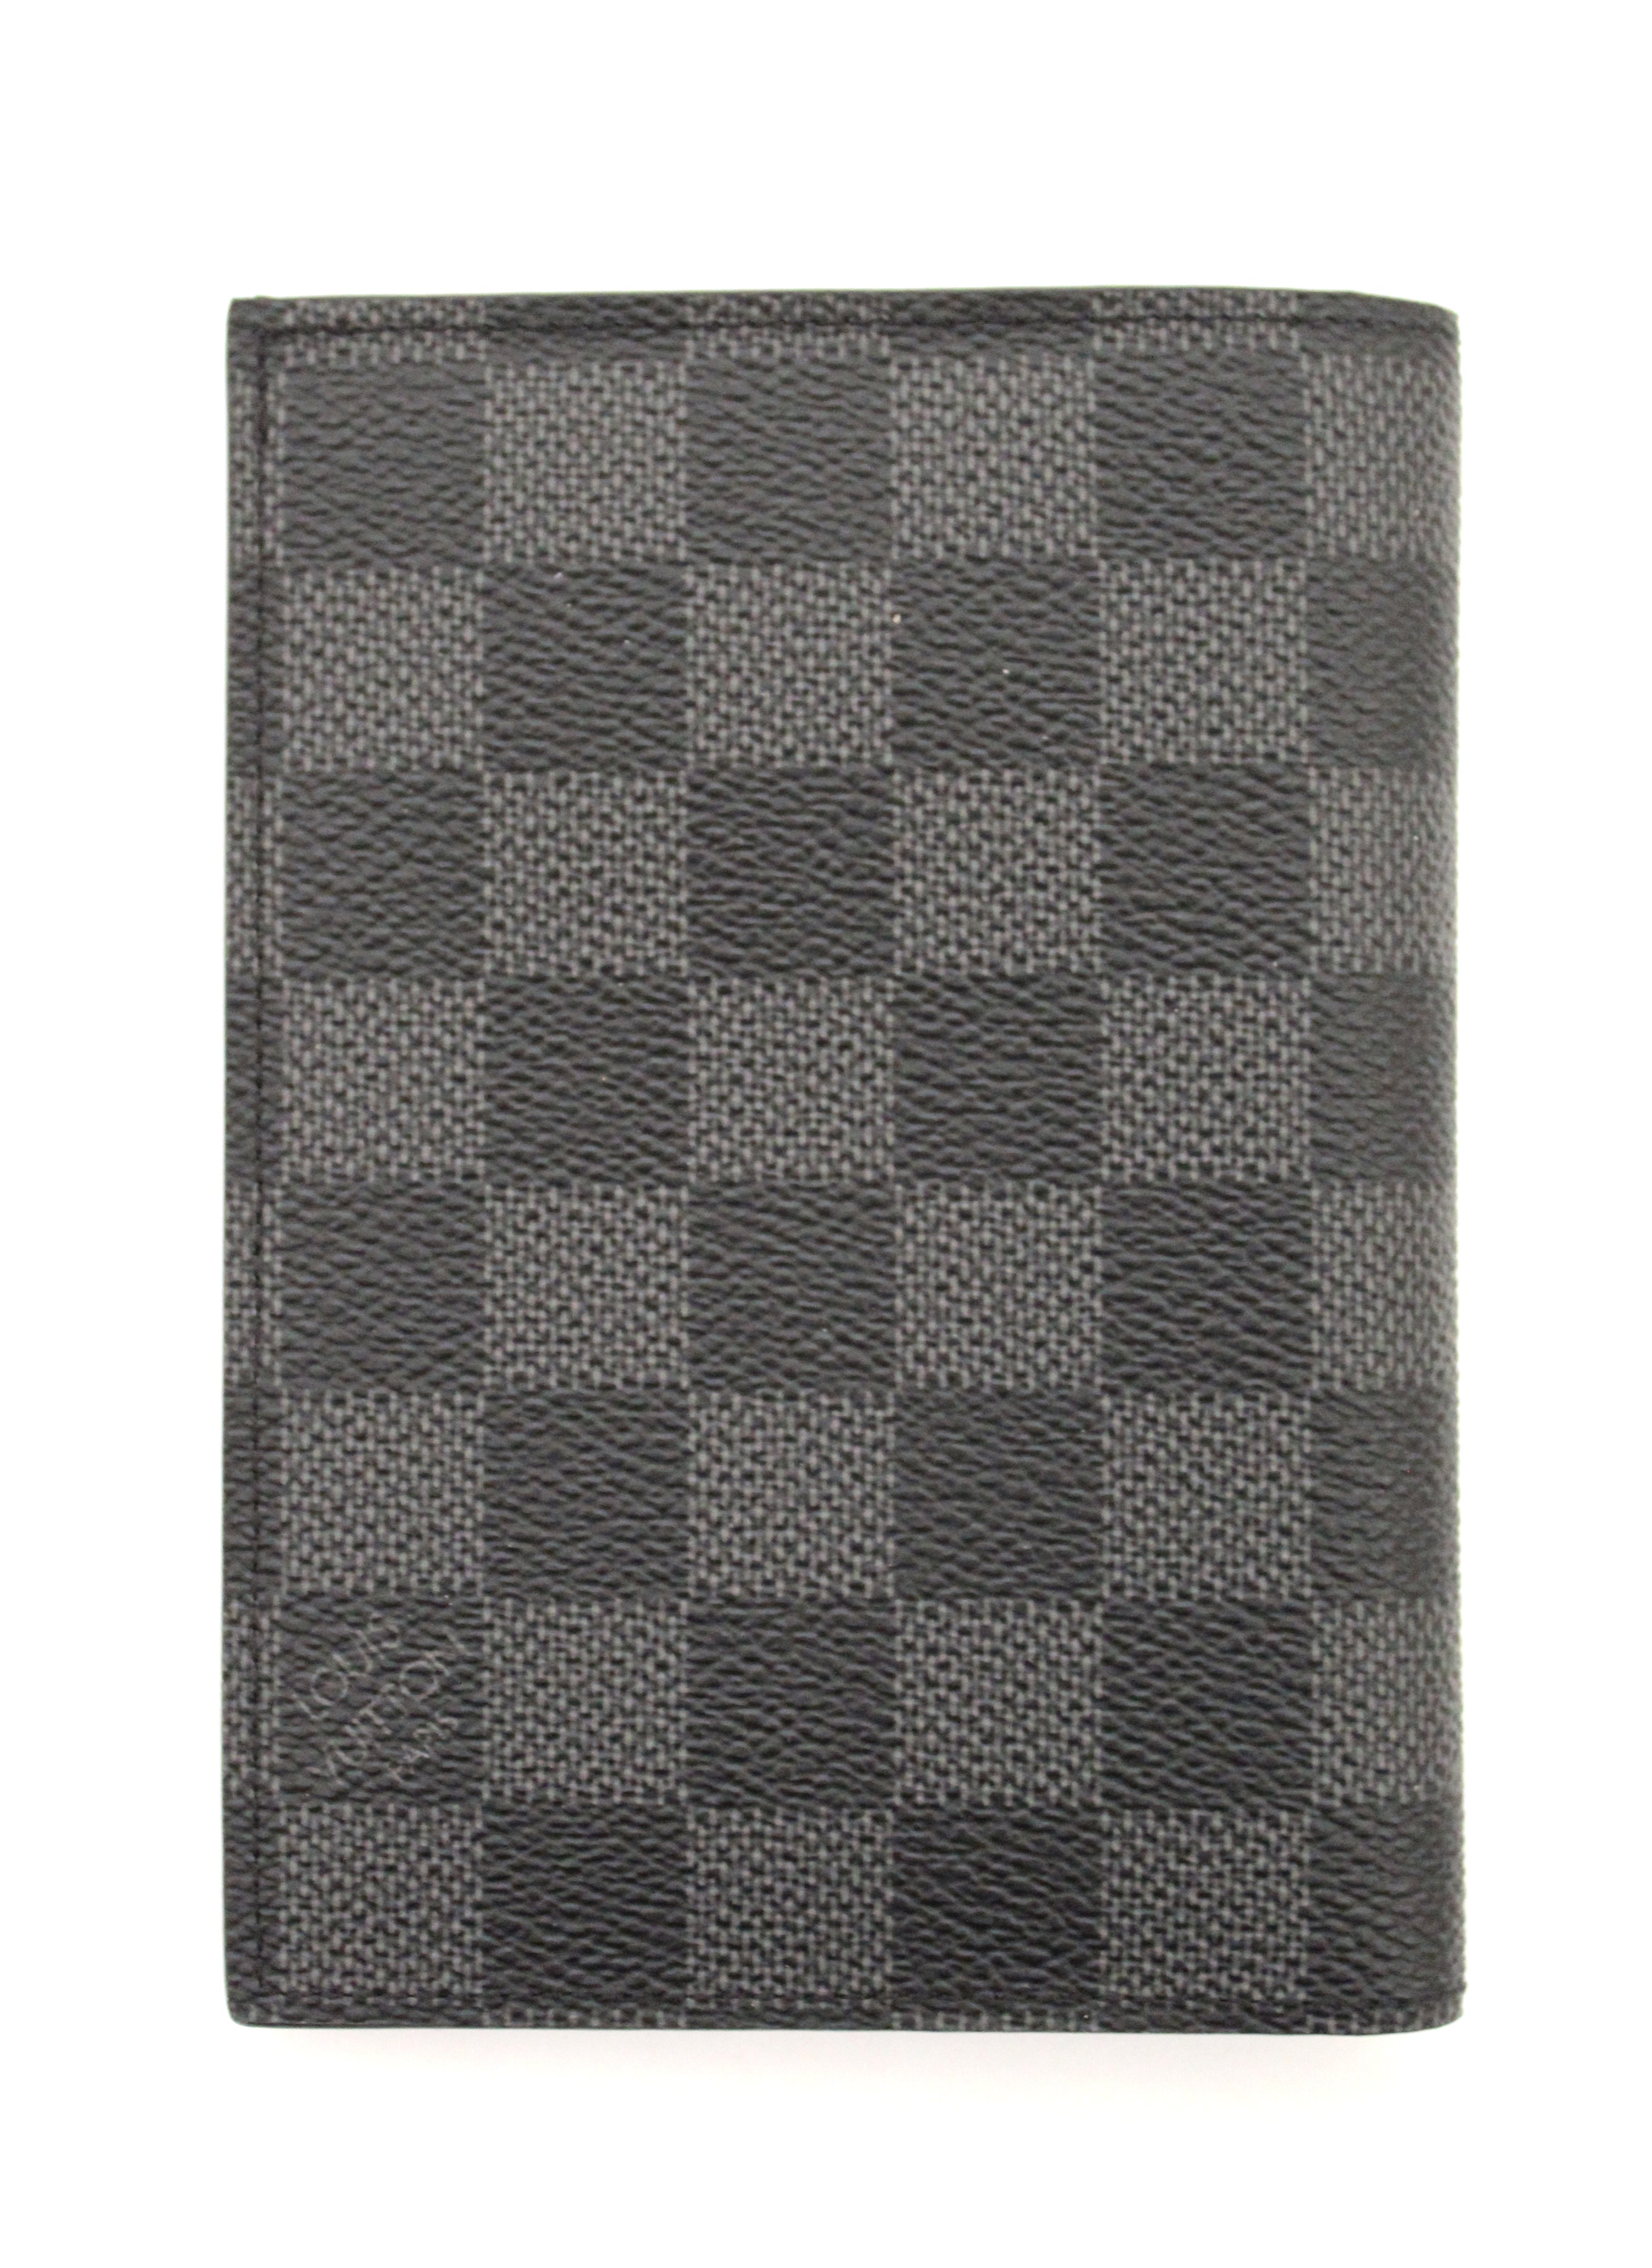 Authentic Louis Vuitton Damier Graphite Canvas Passport Cover